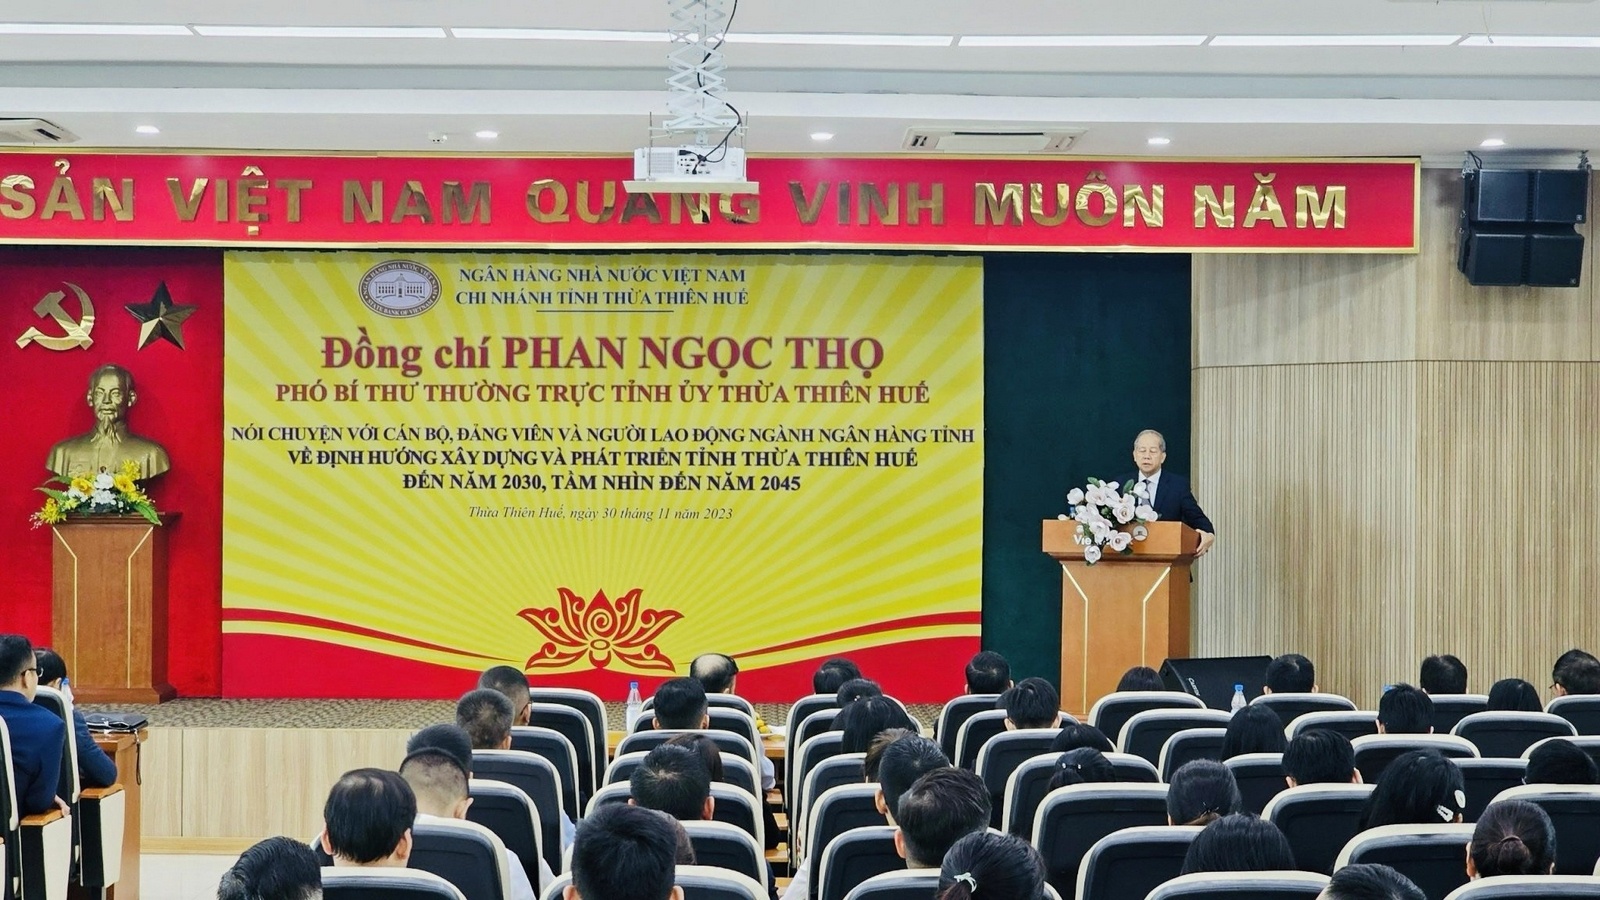 Thừa Thiên Huế: Phó Bí thư Tỉnh ủy nói chuyện với cán bộ, đảng viên và người lao động ngành Ngân hàng